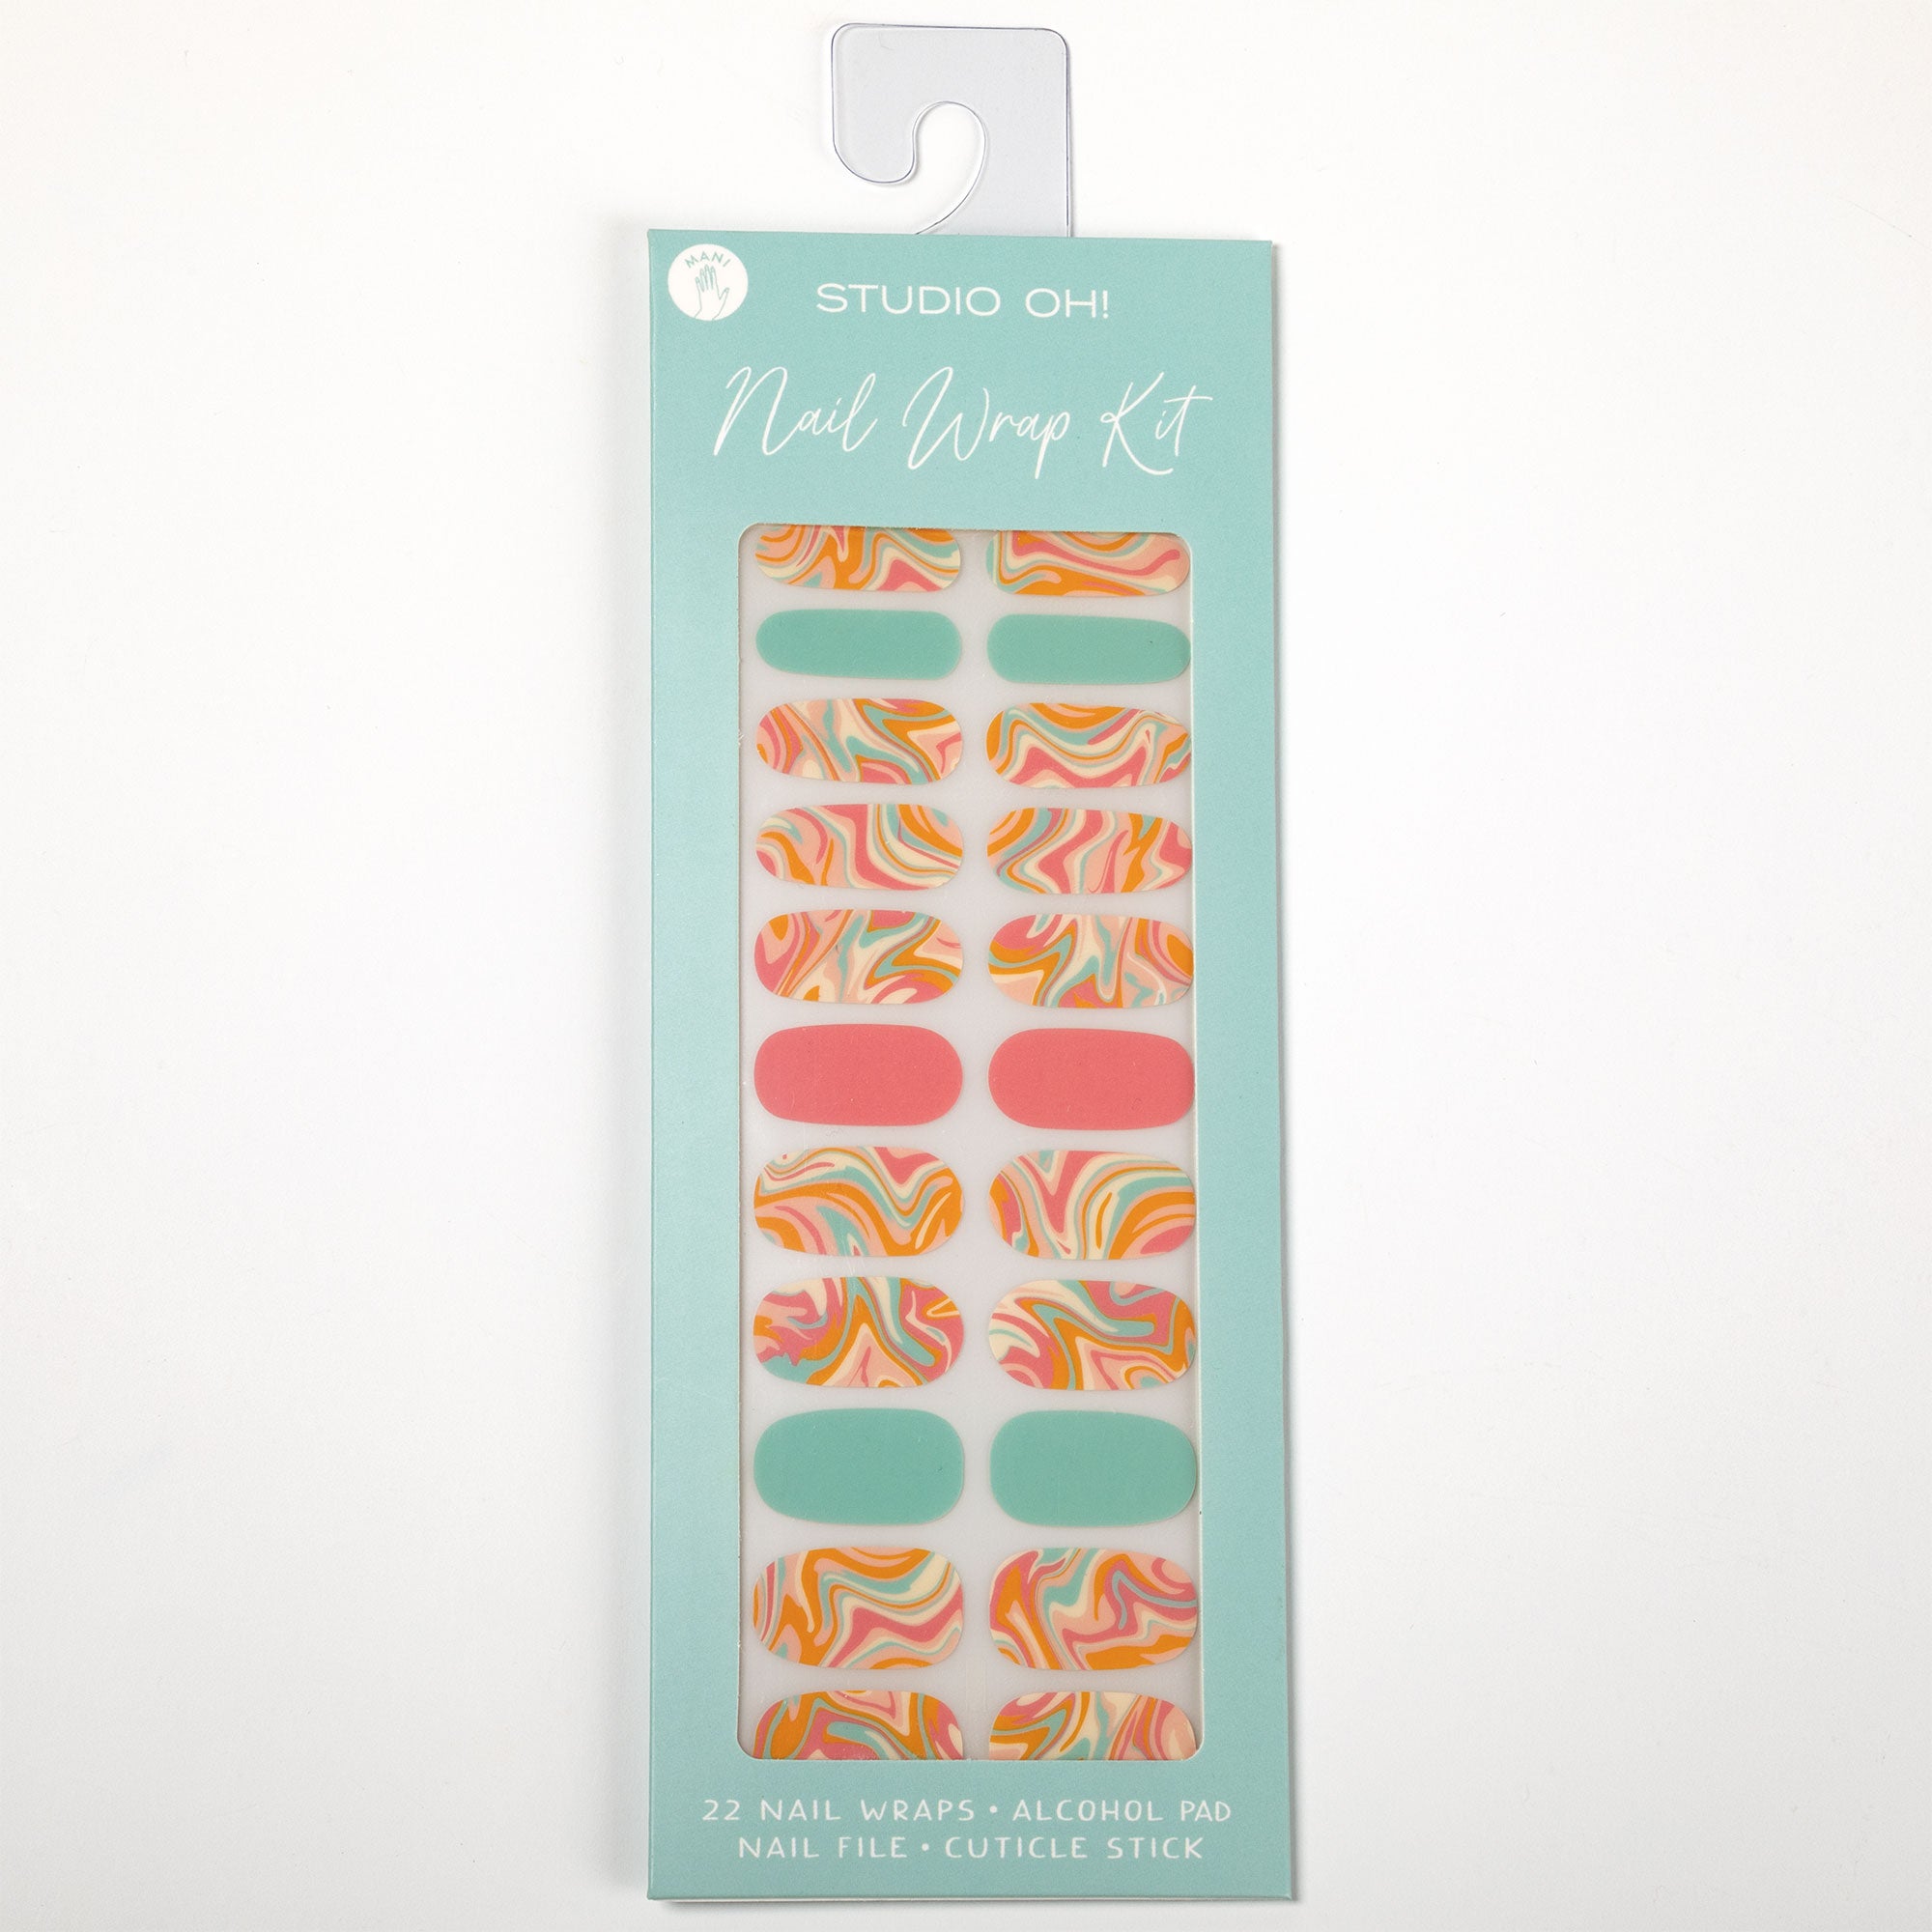 Patterned Manicure Nail Wrap Kit - Retro Swirl